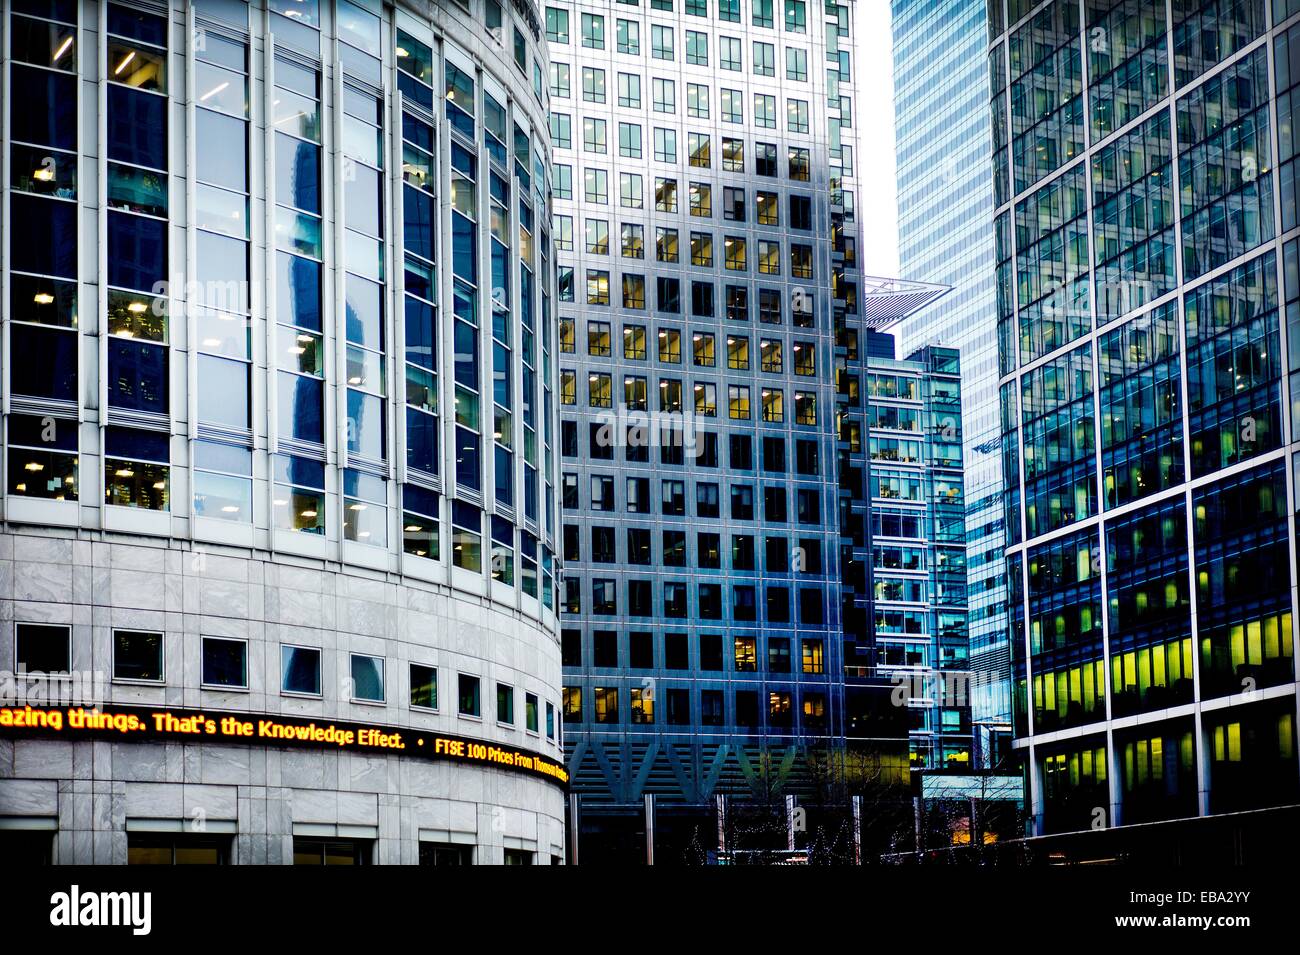 Vista de Edificios de Canary Wharf Con Oficinas y Informacion de Börse,  Canary Wharf Gebäude mit Büros Stockfotografie - Alamy